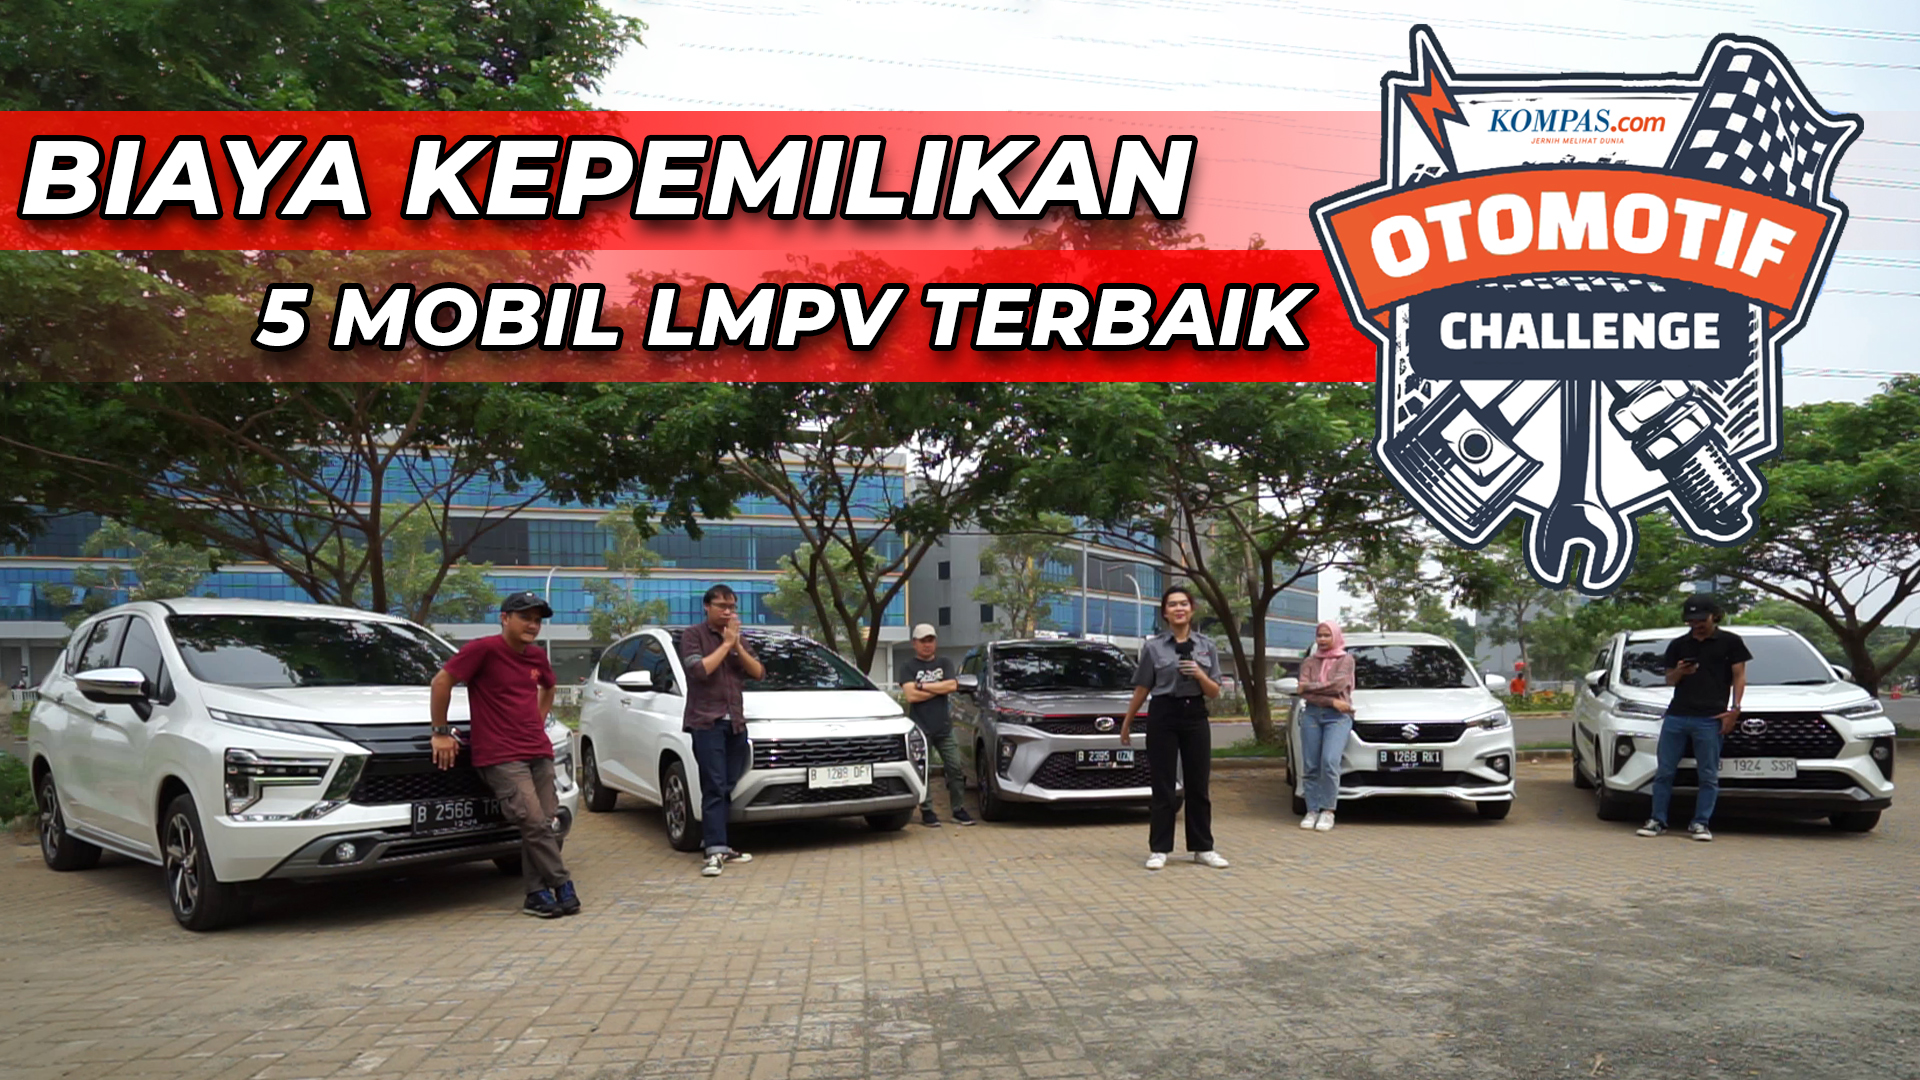 BIAYA KEPEMILIKAN 5 MOBIL LMPV TERBAIK DI INDONESIA | Kompas Otomotif Challenge